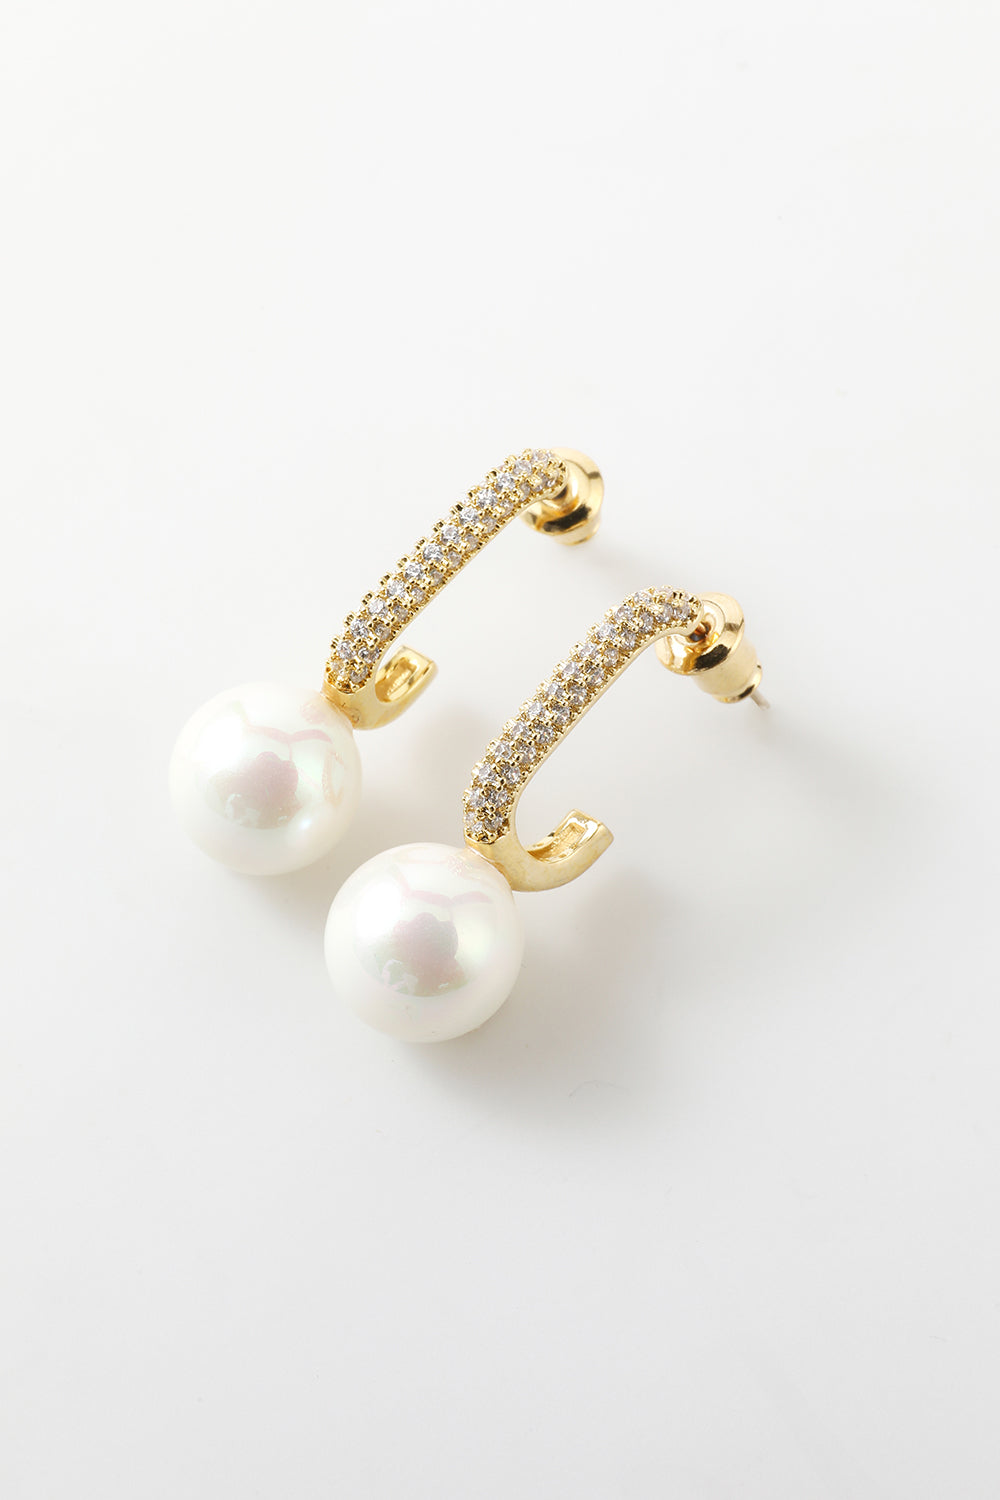 Pearl  Beading Golden Earrings